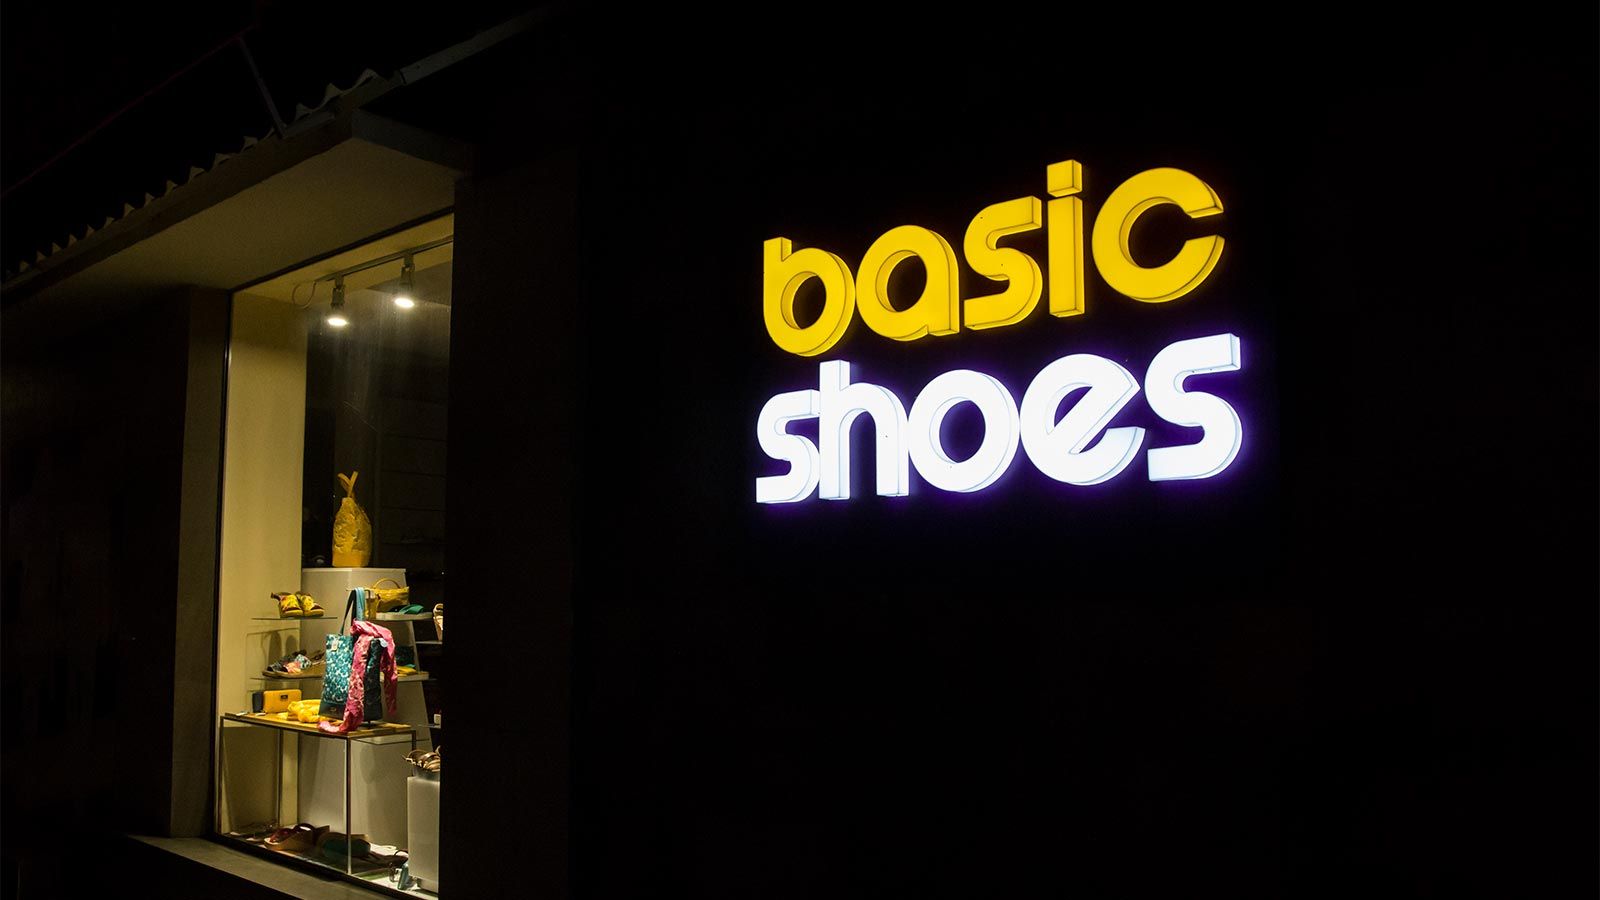 basic shoes whole lit illuminated letters